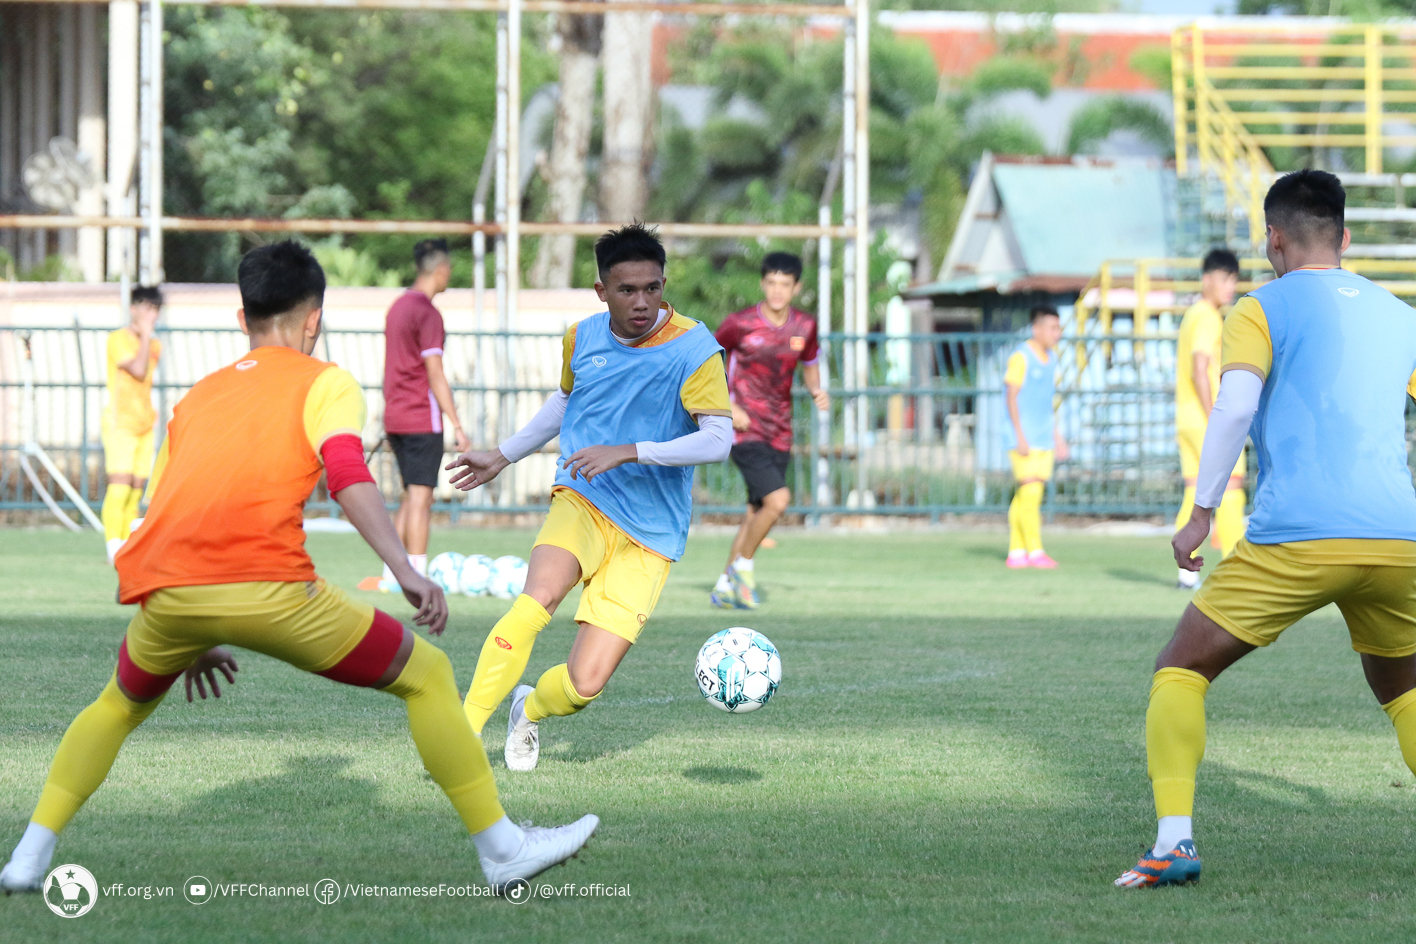 Khung cảnh mới lạ và bầu không khí đặc biệt của giải vô địch U23 Đông Nam Á 2023 được tổ chức tại nơi đây đã mang đến sự hứng khởi cho các cầu thủ. Tất cả đều thể hiện sự sung sức và tích cực hoàn thành một cách tốt nhất giáo án của ban huấn luyện.